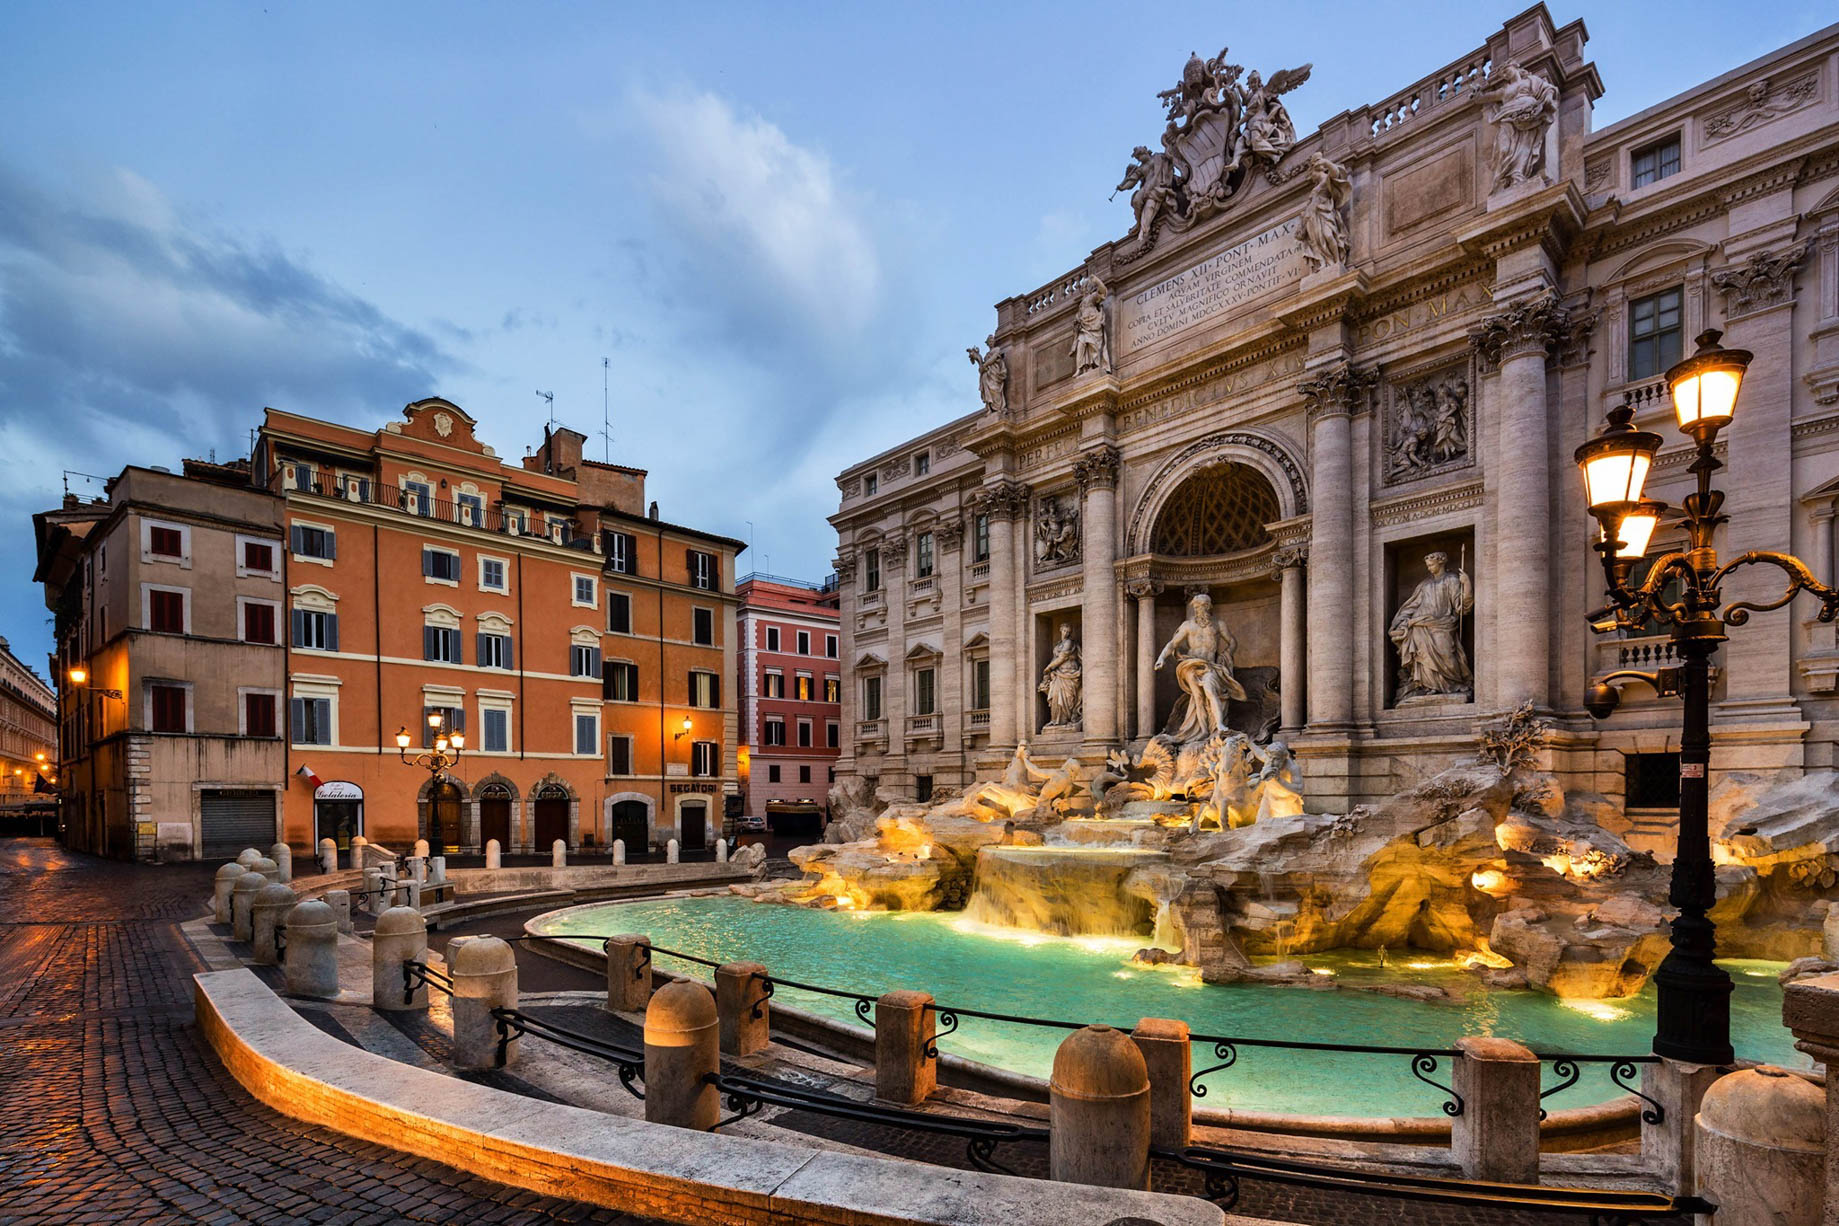 Baglioni Hotel Regina, Roma – Rome, Italy – Trevi Fountain